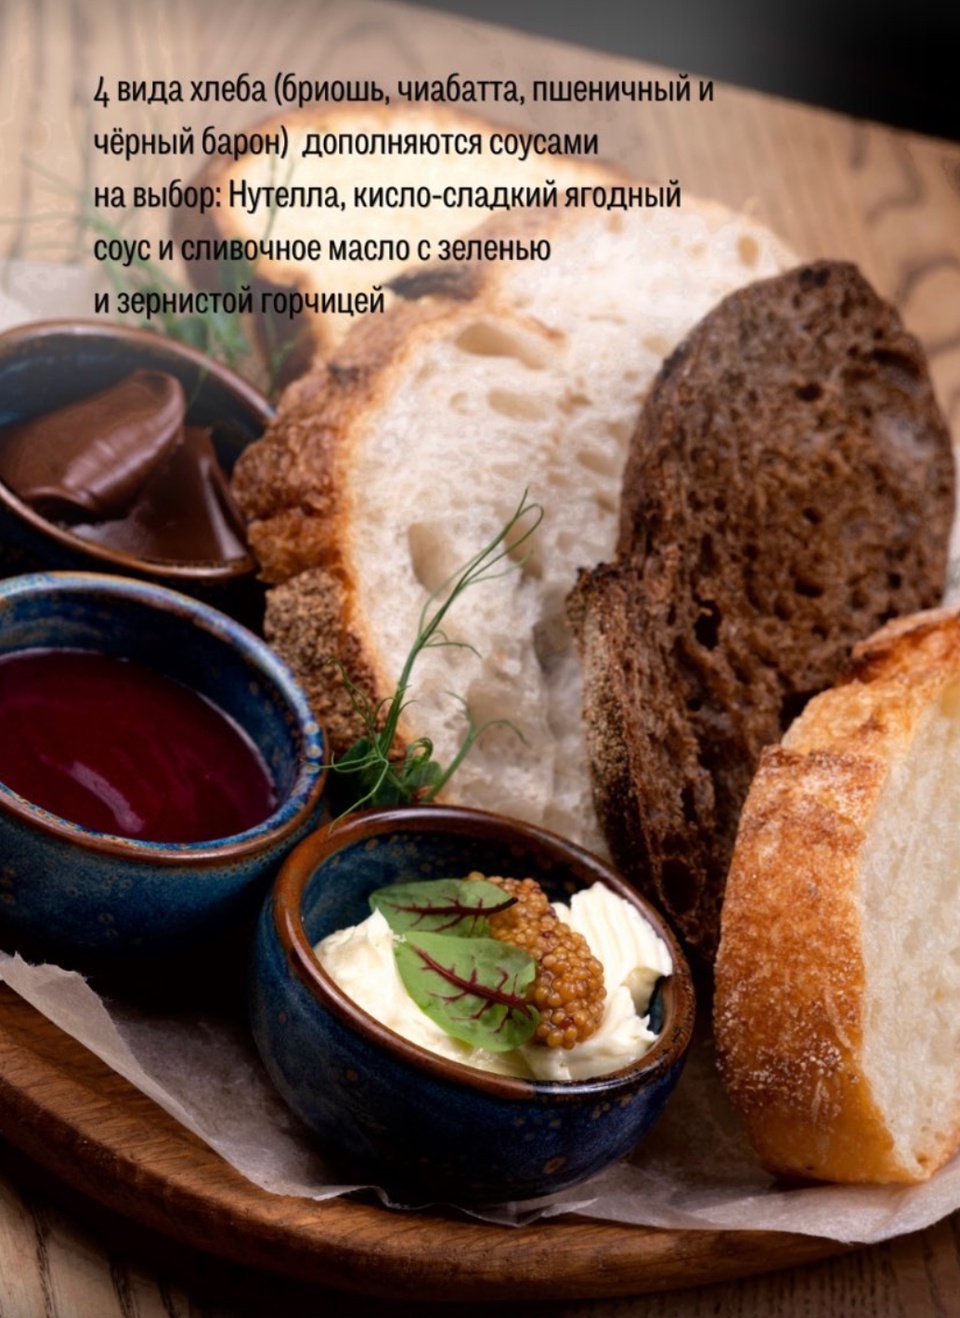 Ассорти ремесленного хлеба с ароматным маслом, Нутеллой и ягодным соусом - 220 ₽, заказать онлайн.